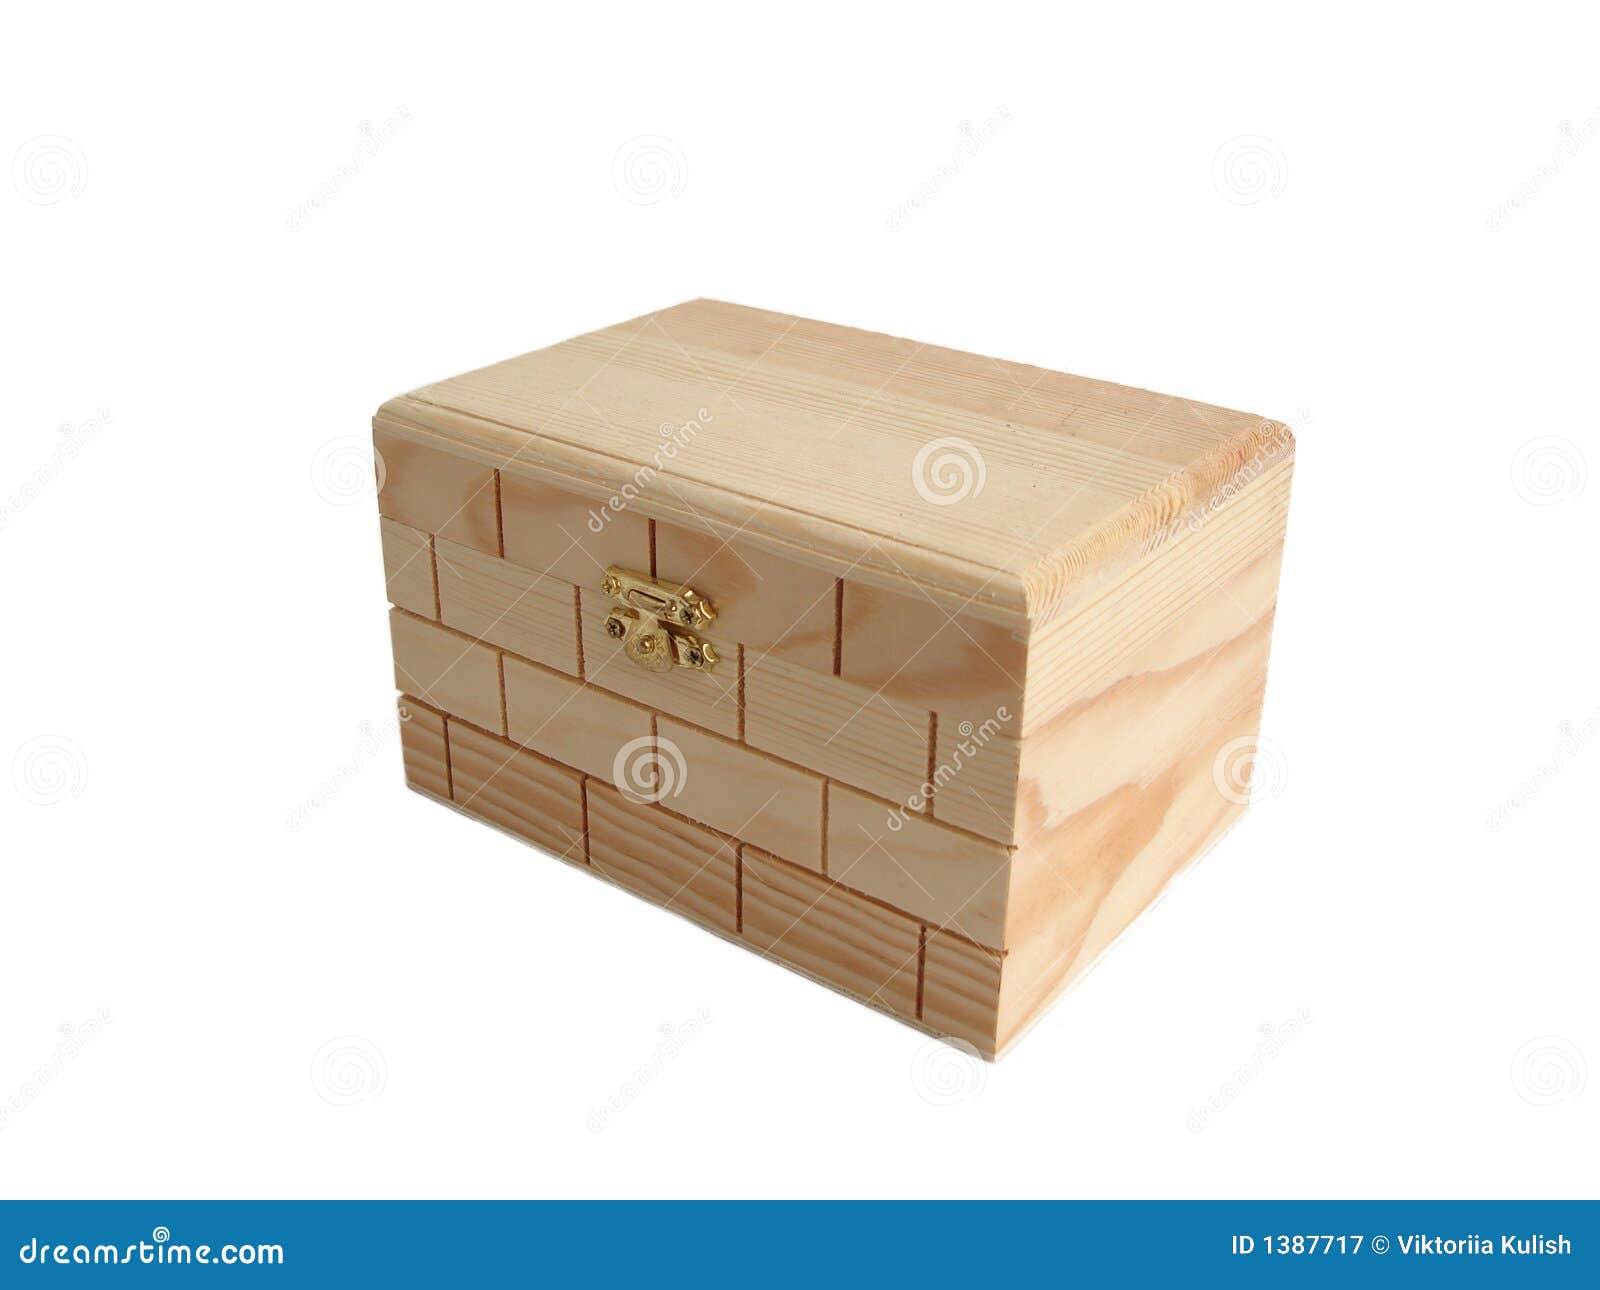 Wooden Treasure Chest Box